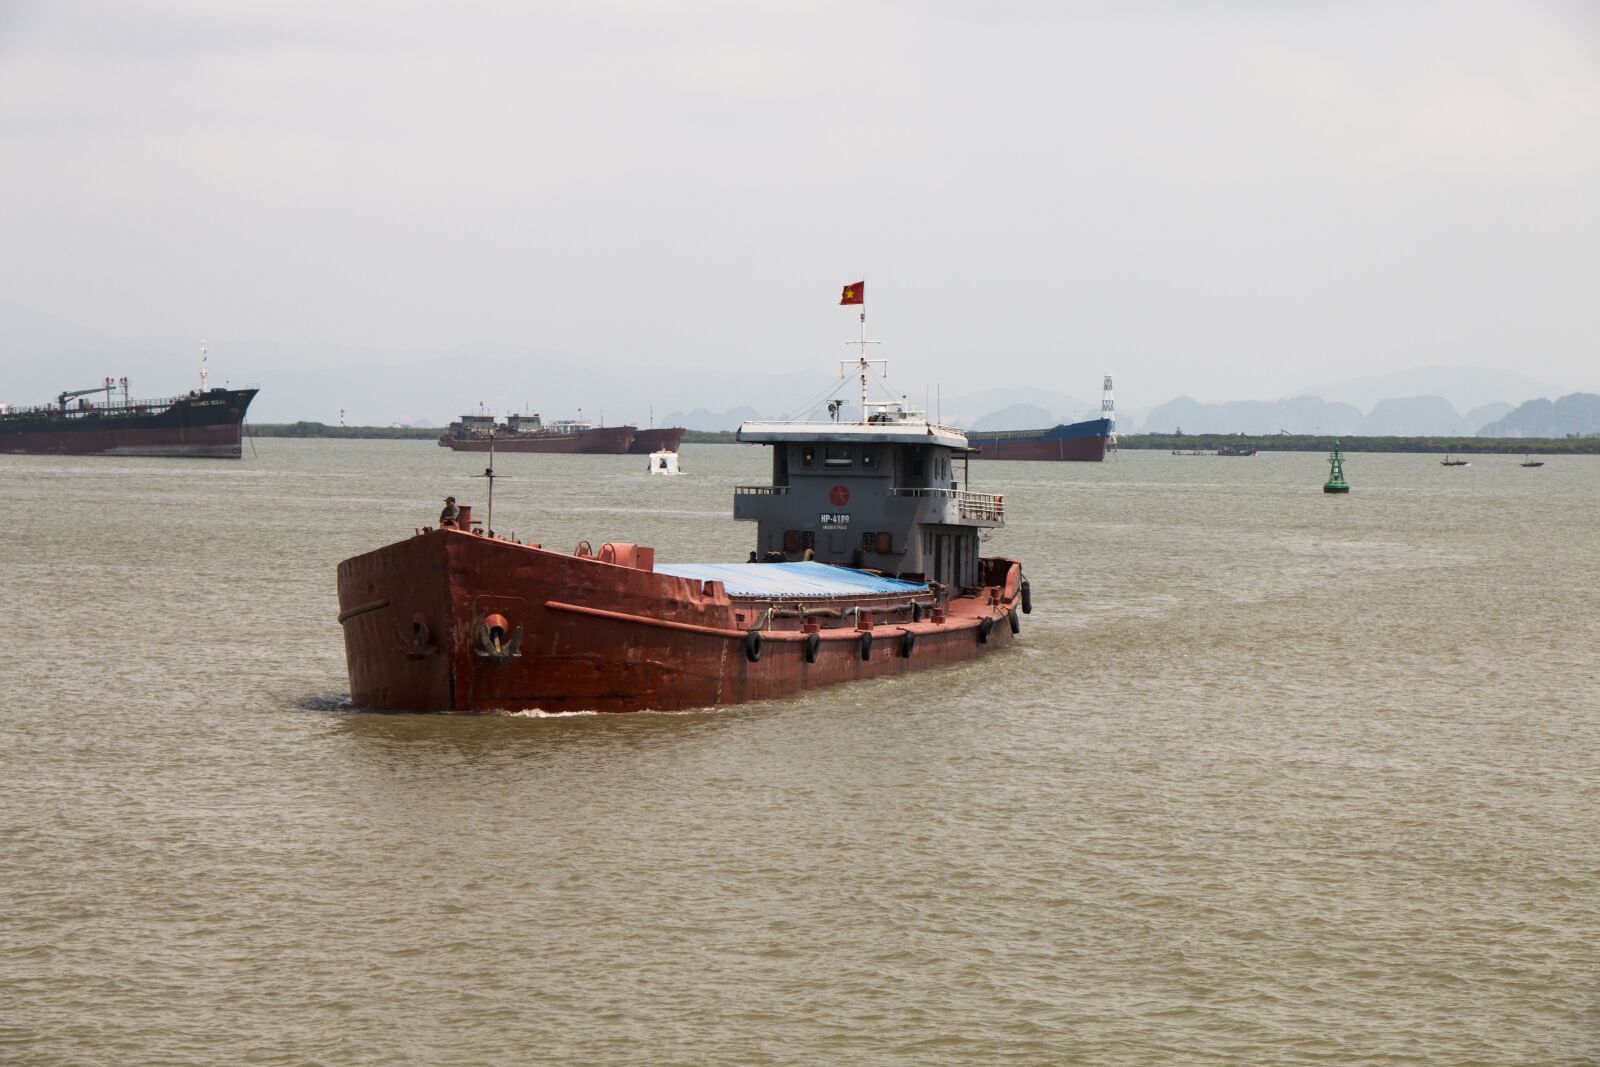 Canon EOS 70D sample photo. Tanker, ship, sea photography